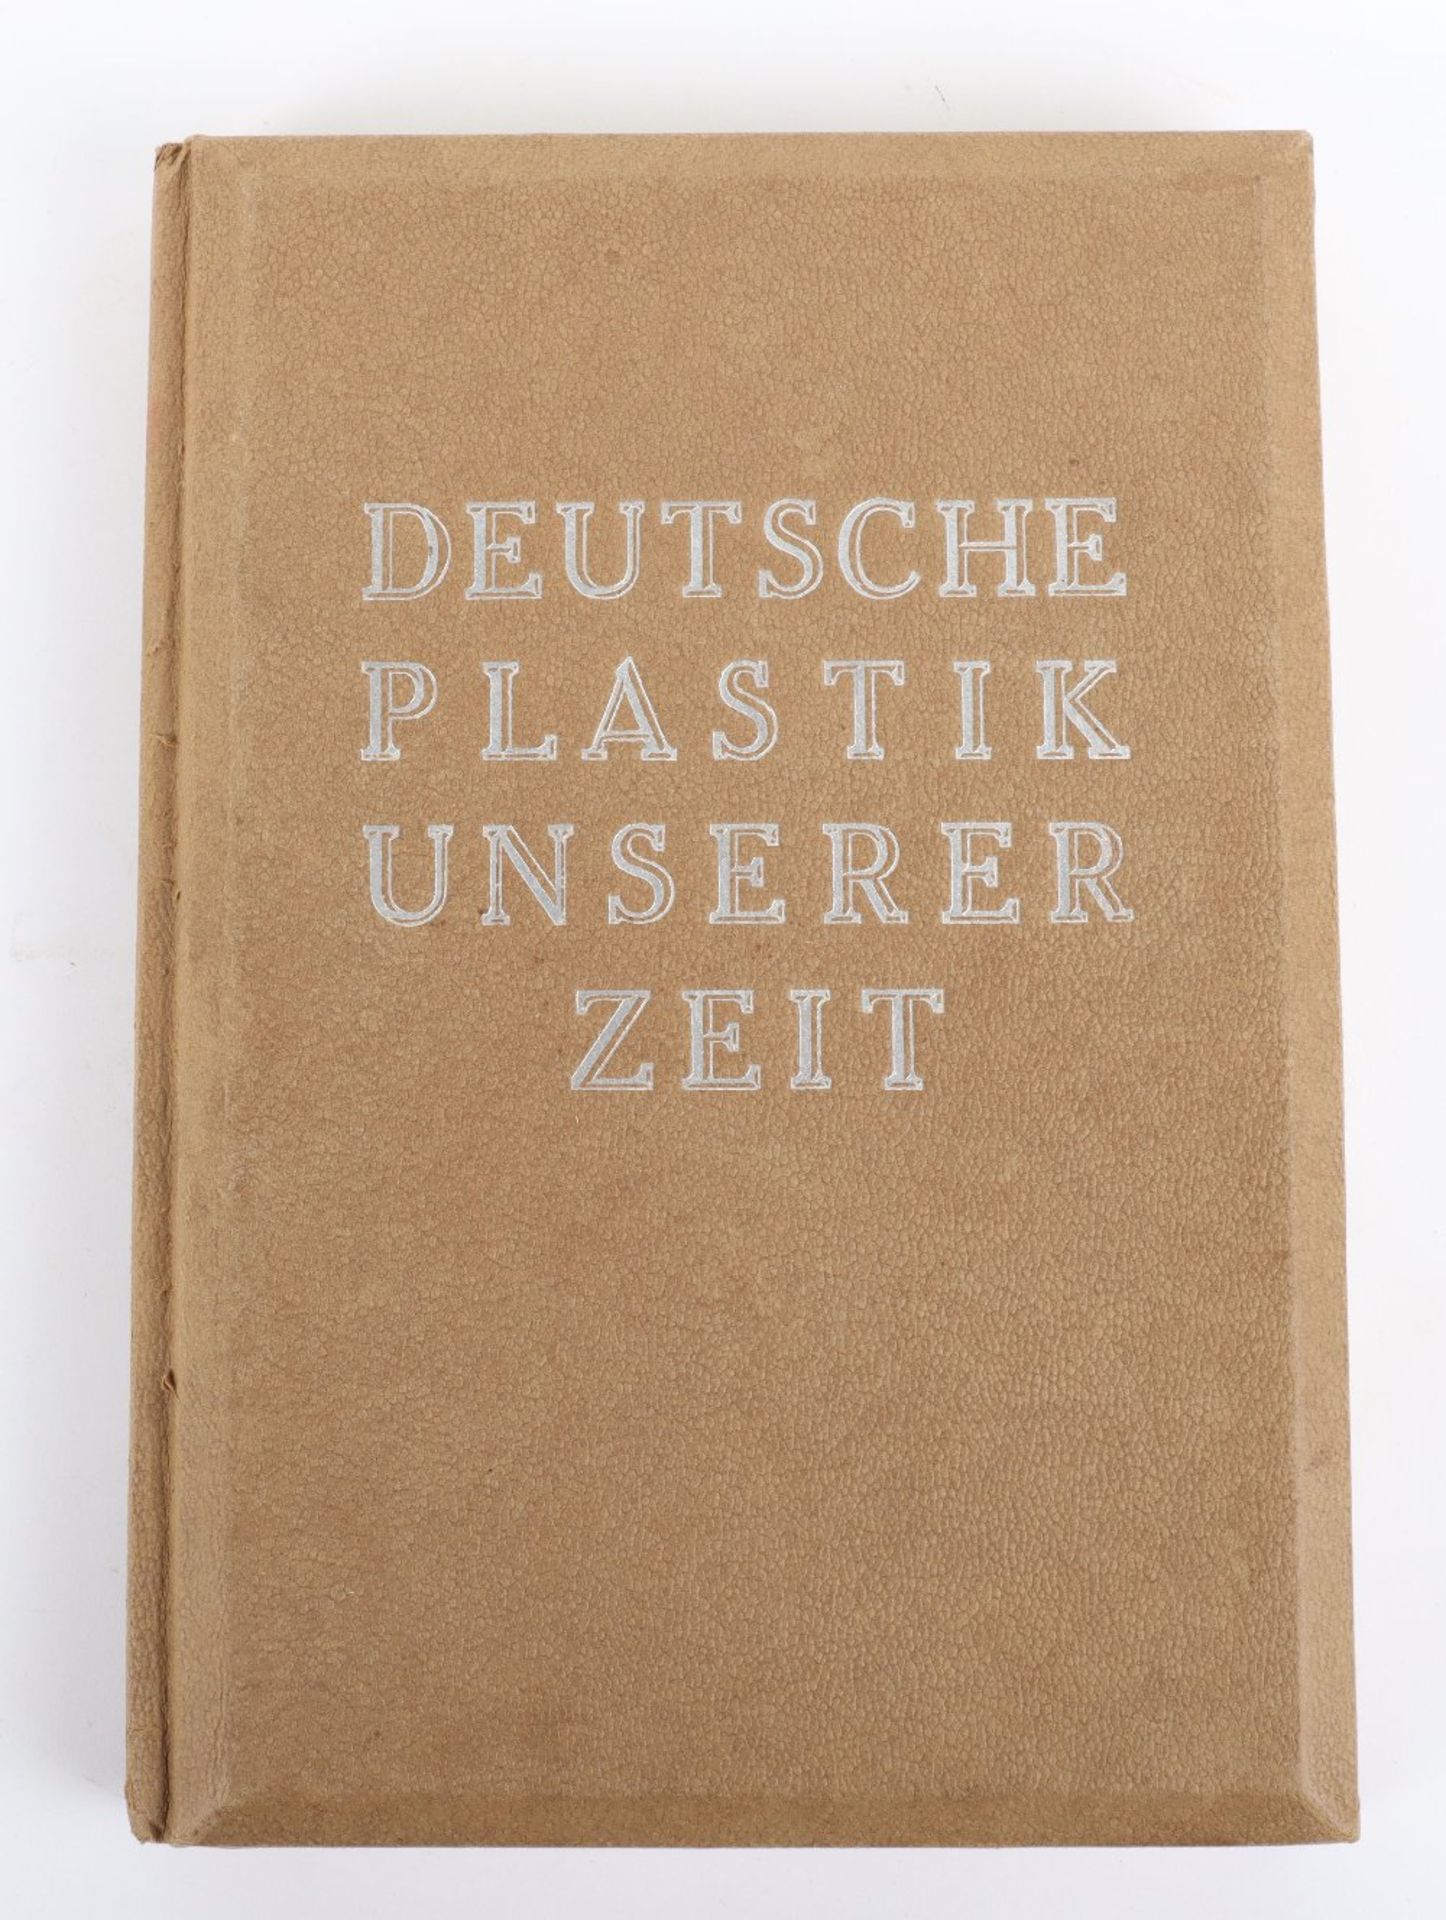 Third Reich Publication “Deutsche Plastik Unserer Zeit” Belonging to Hans Frank Governor General of - Image 5 of 5